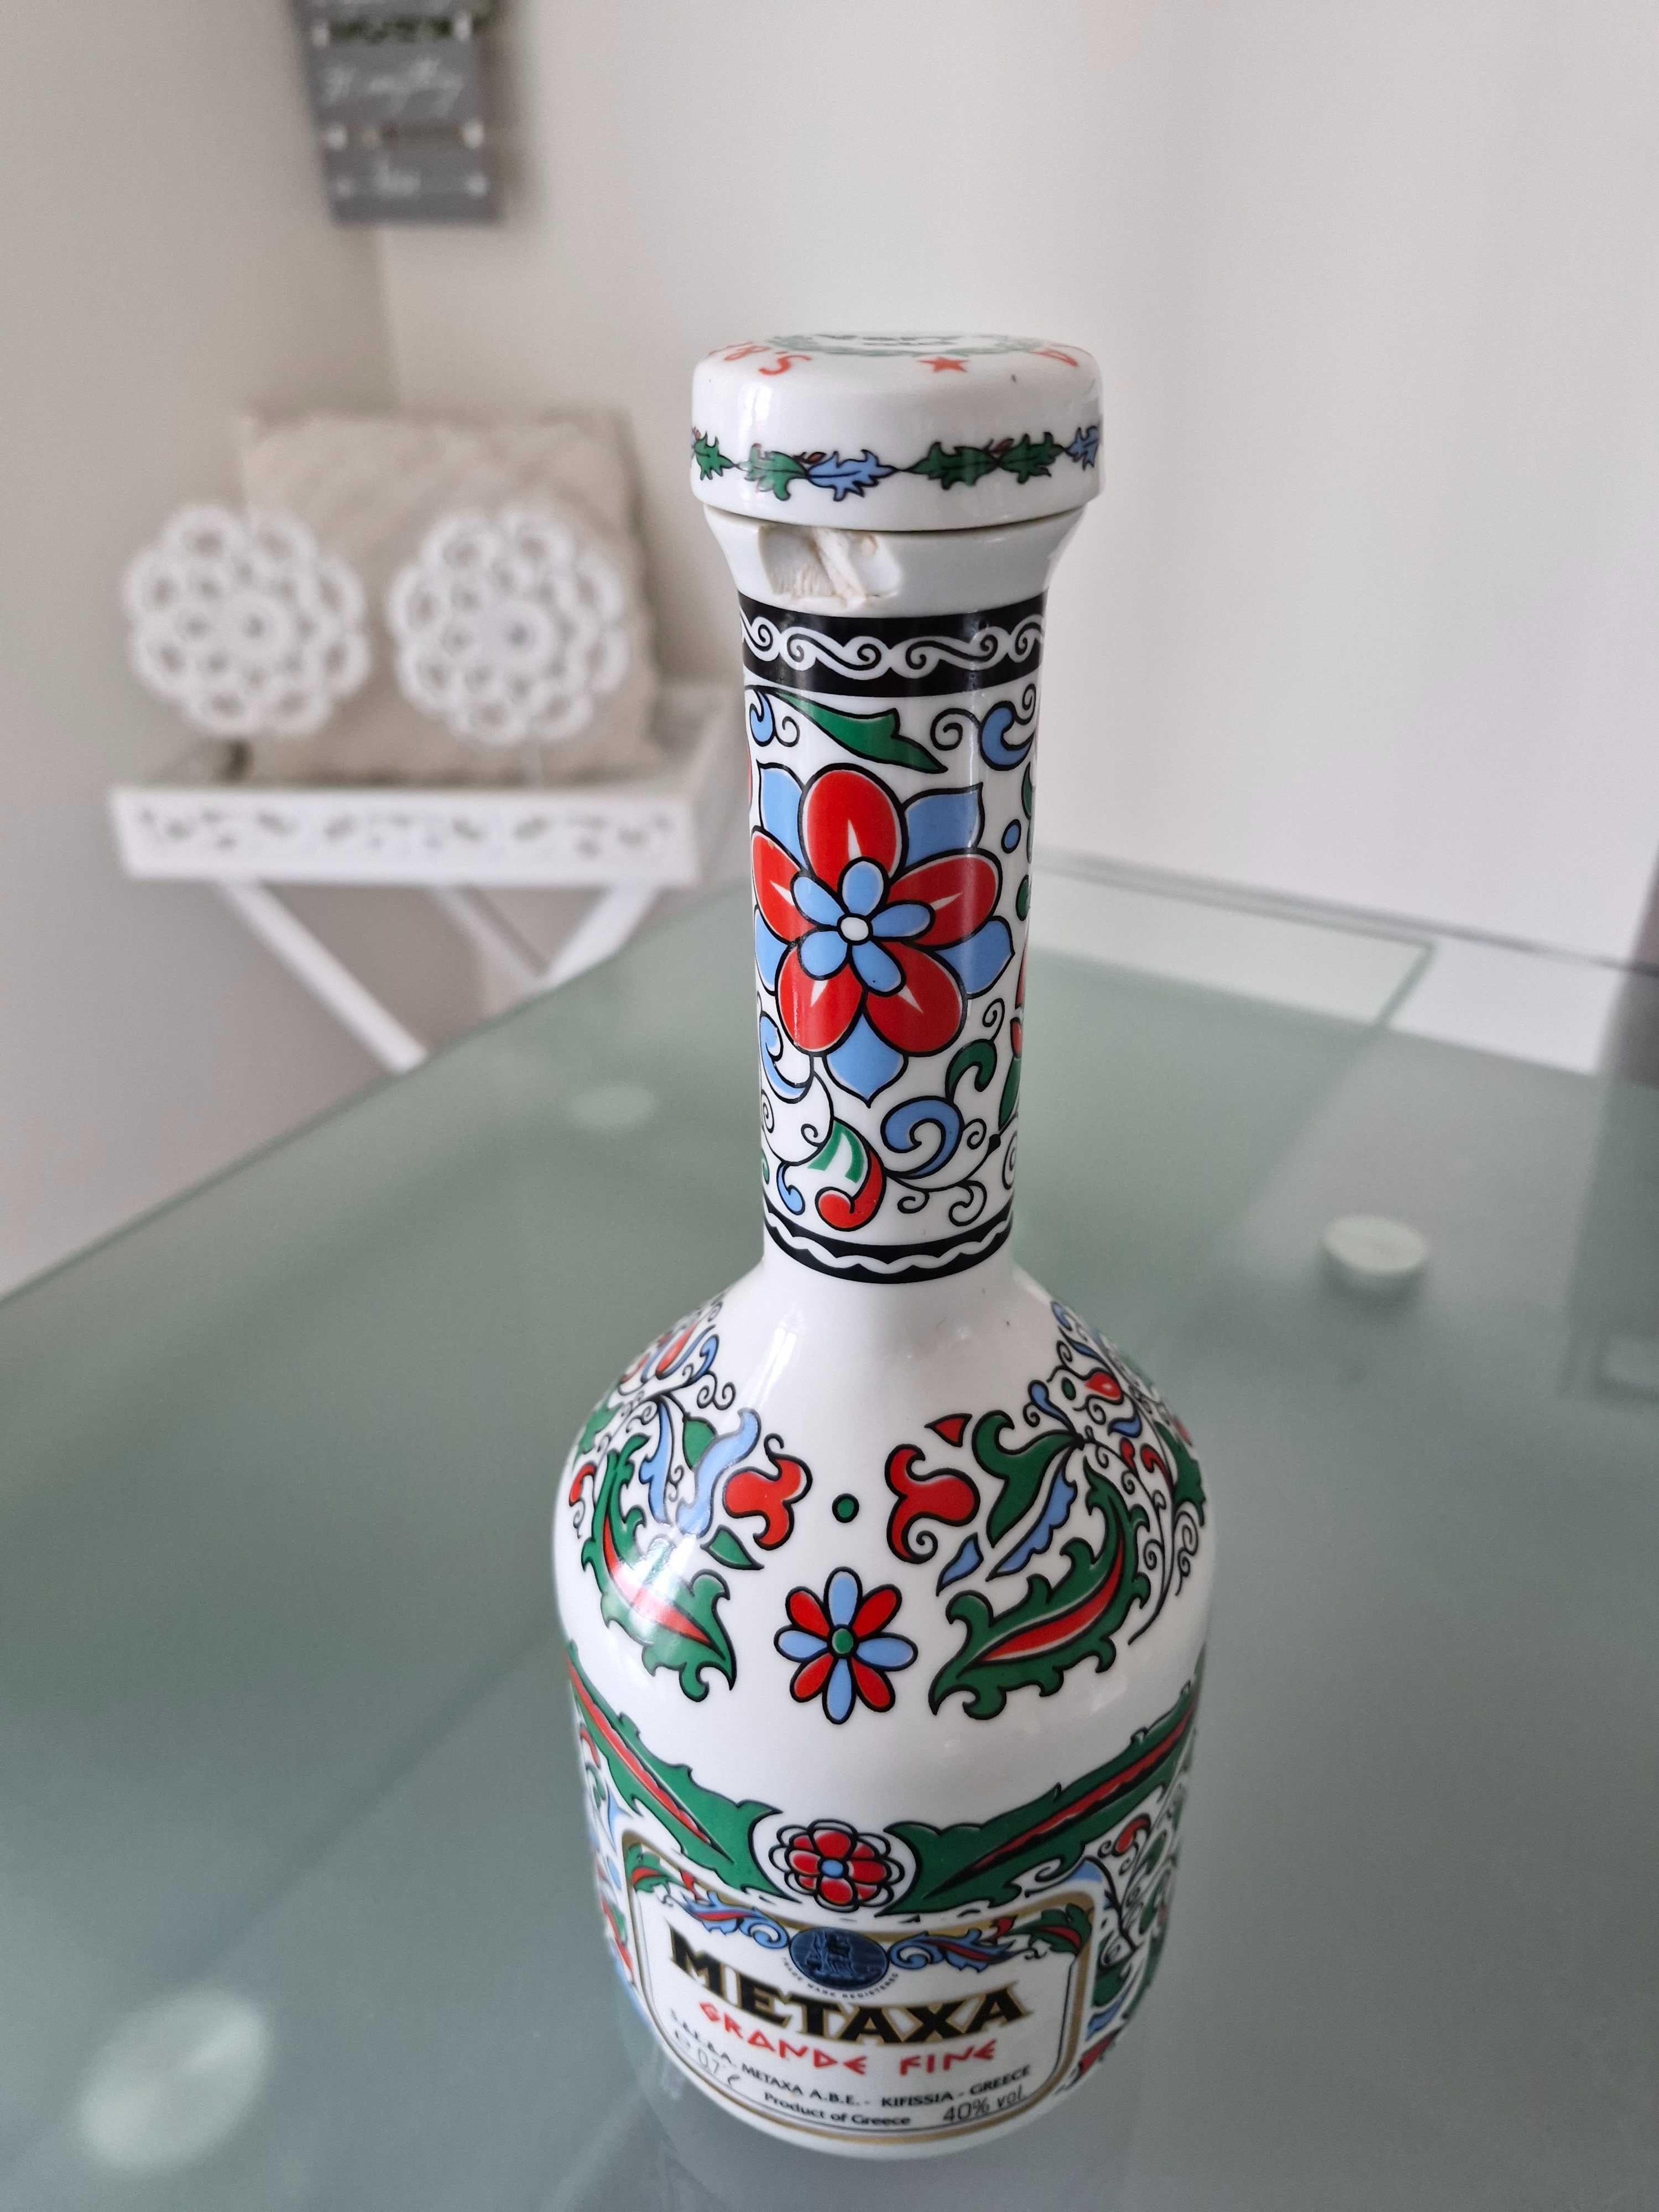 Butelka Karafka po Metaxie  z korkiem porcelanowym